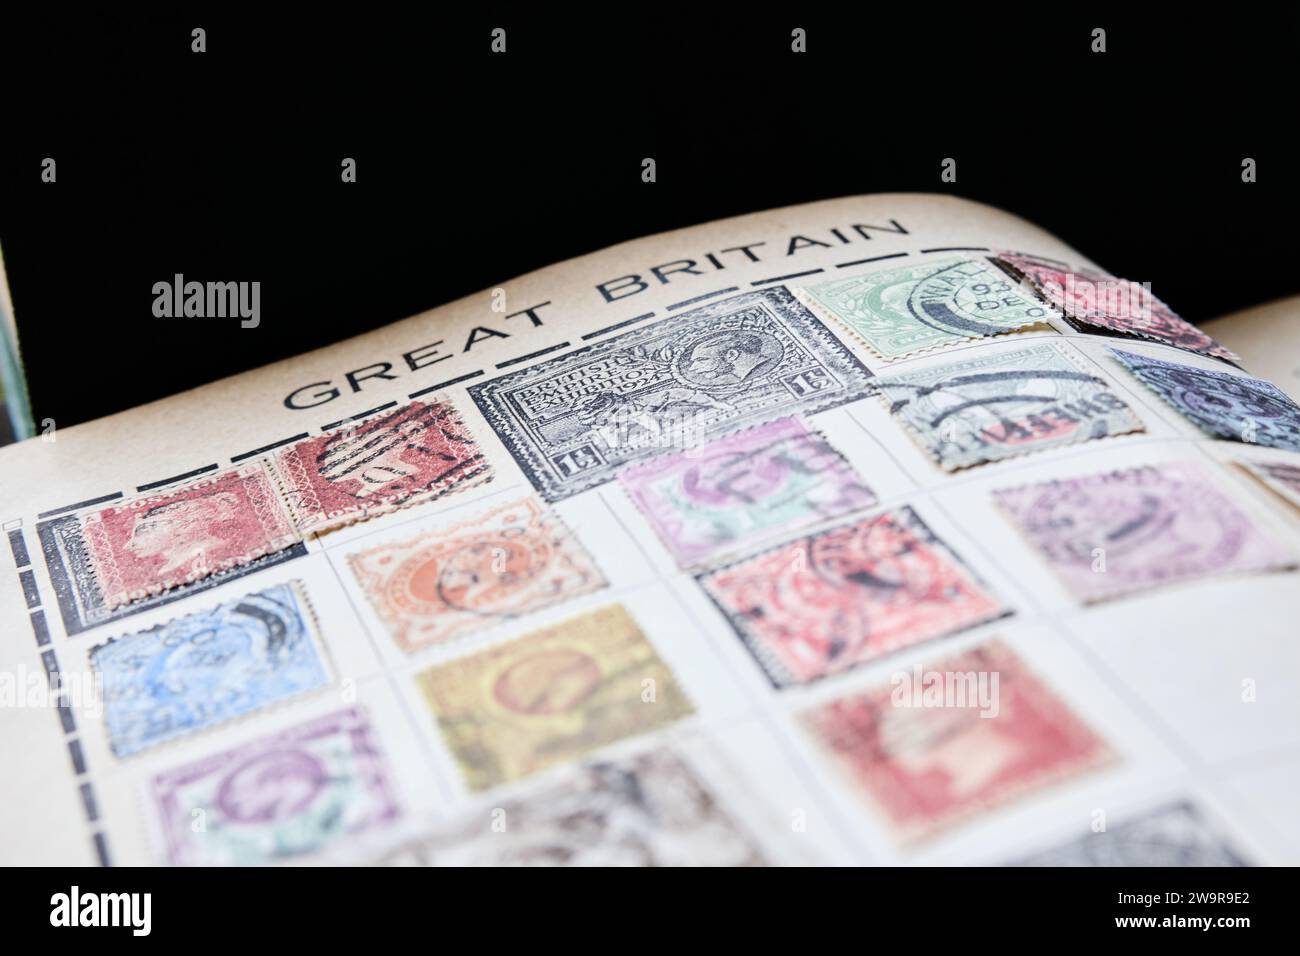 página de sellos coleccionando libro con sellos de gran bretaña a principios del siglo xx Foto de stock